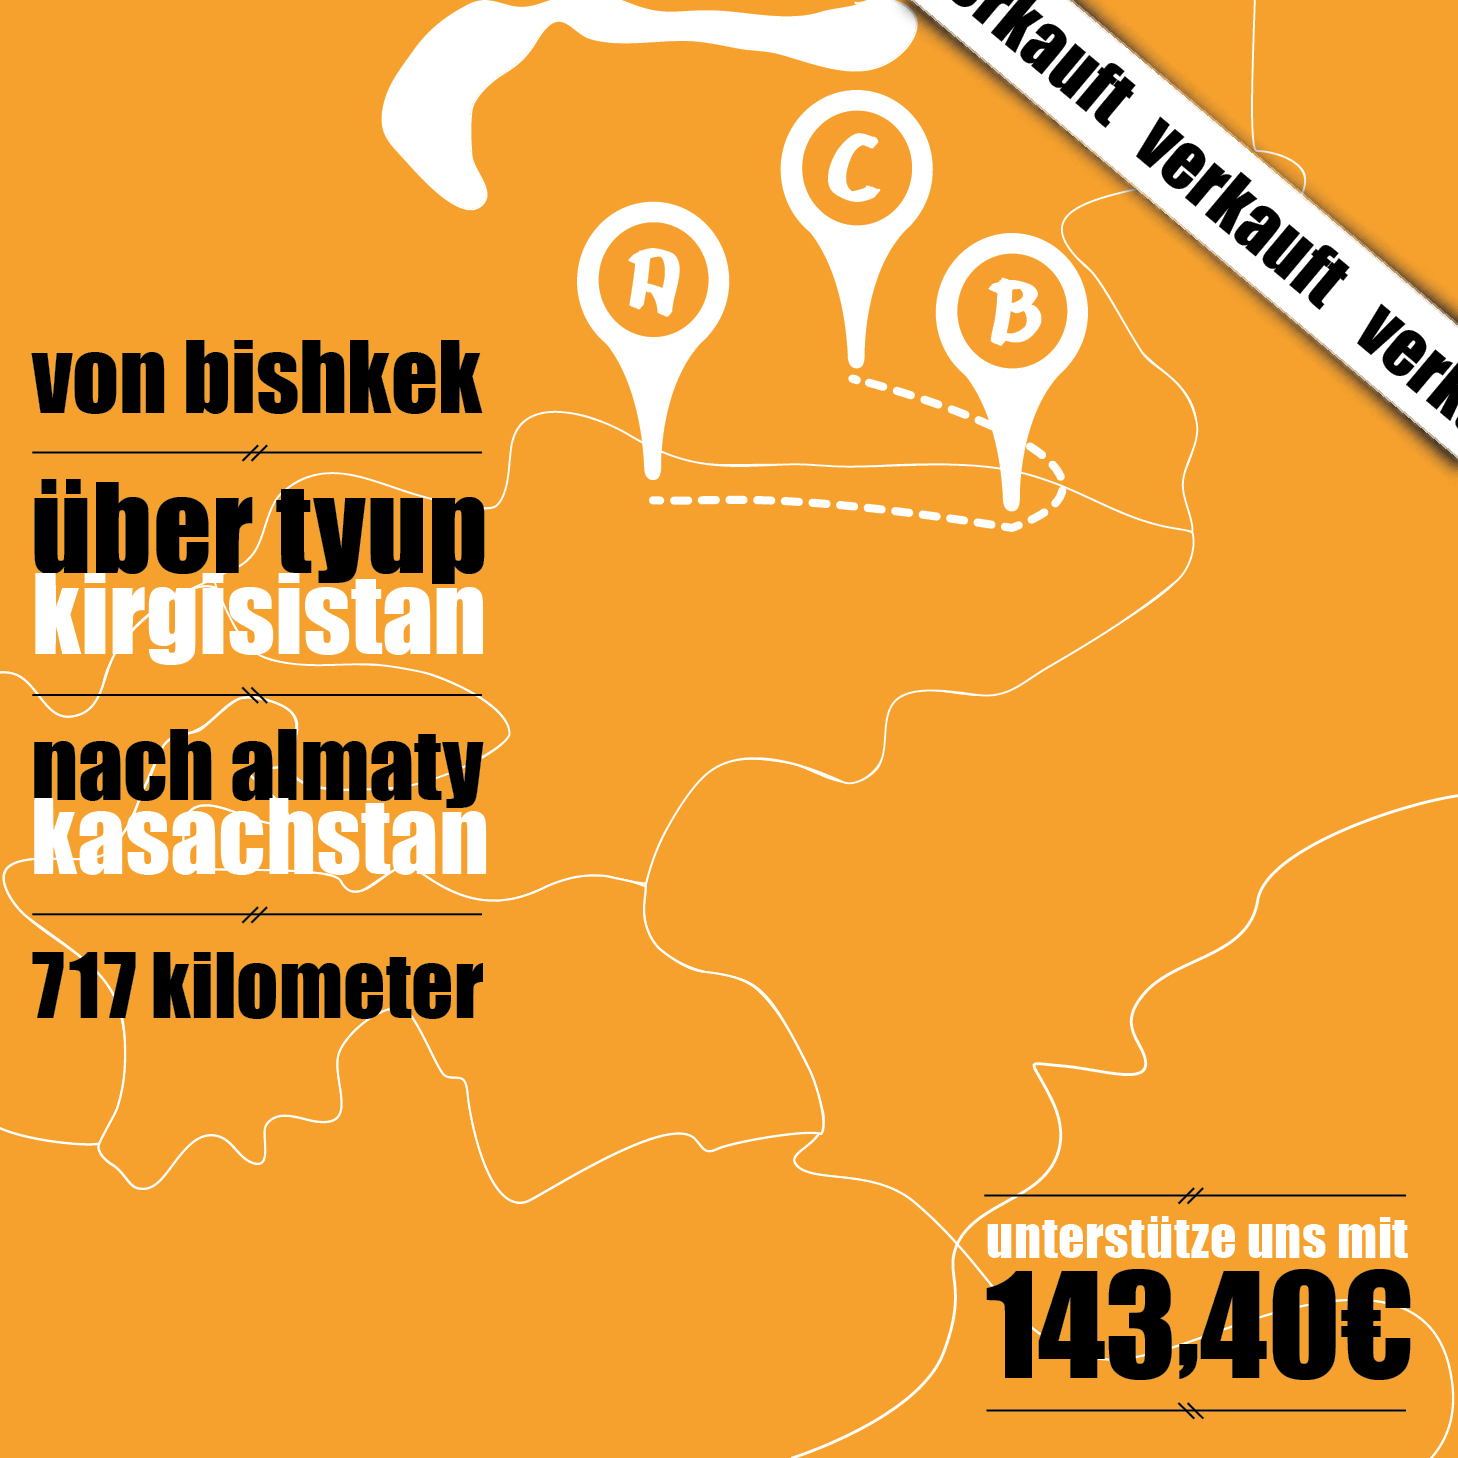 Bishkek - Tyup - Almaty = 143,40€